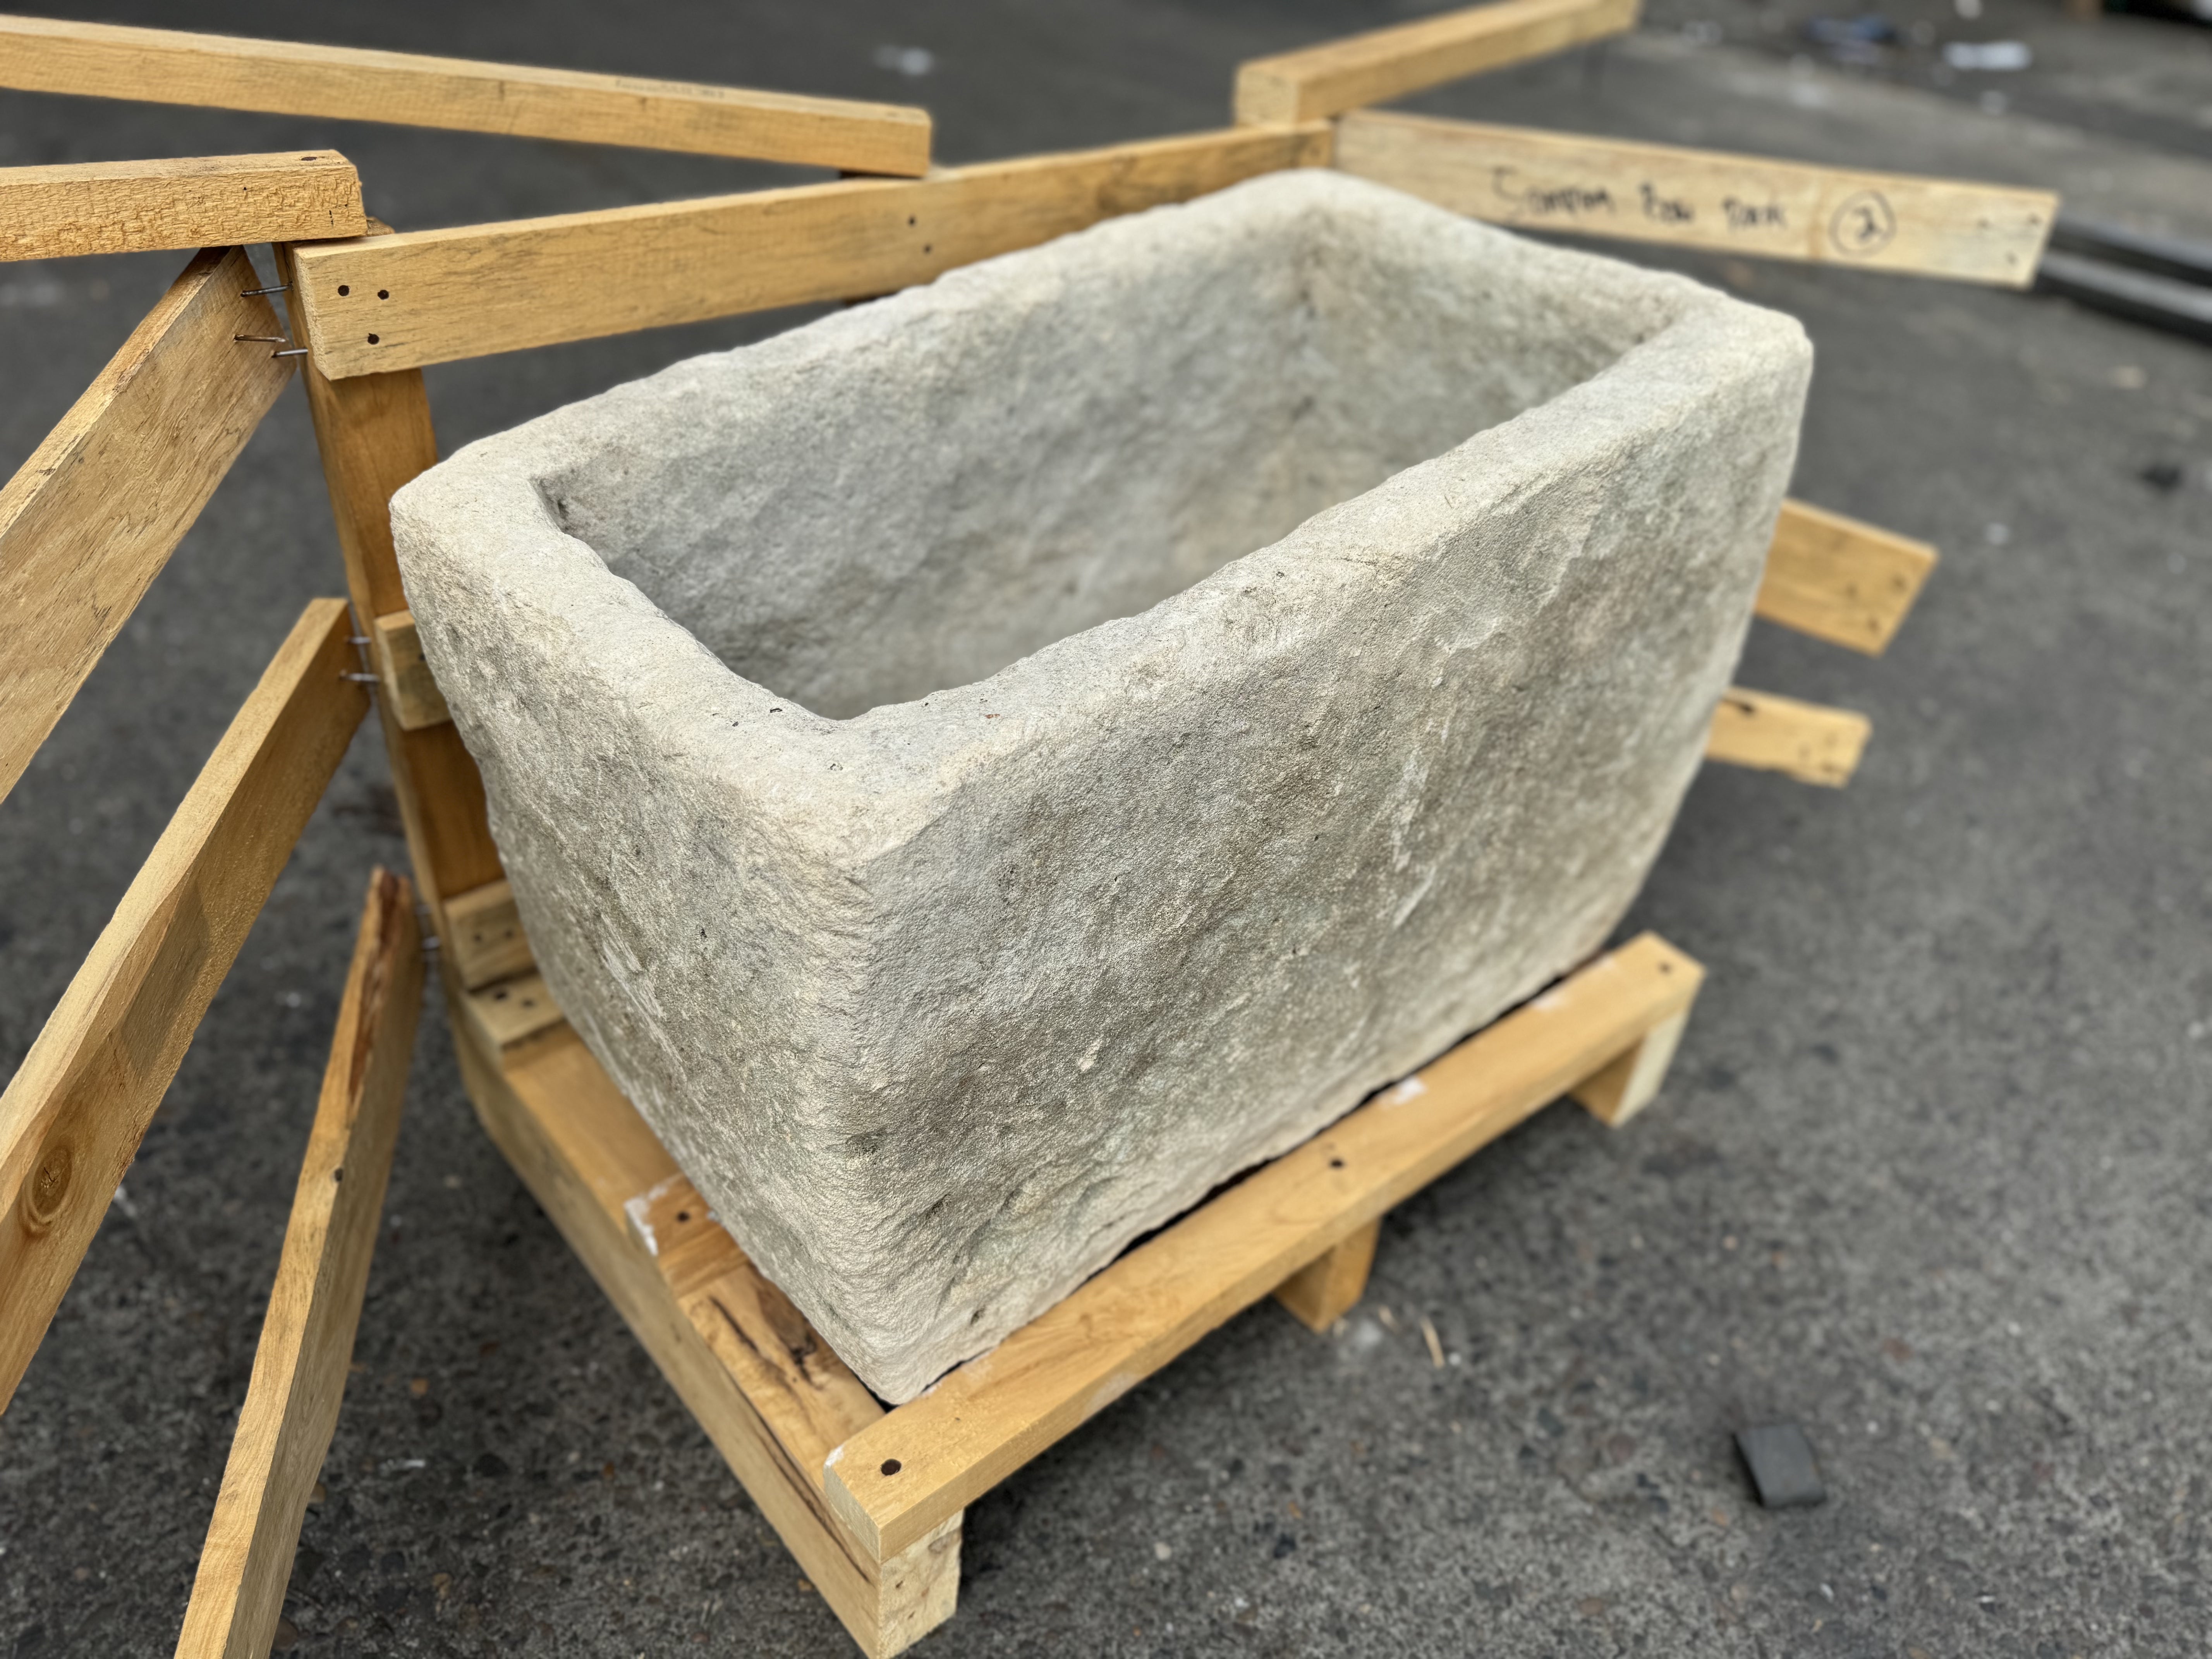 Hand Chiseled Limestone Plantar Box - 63 x 35 x 34 cm